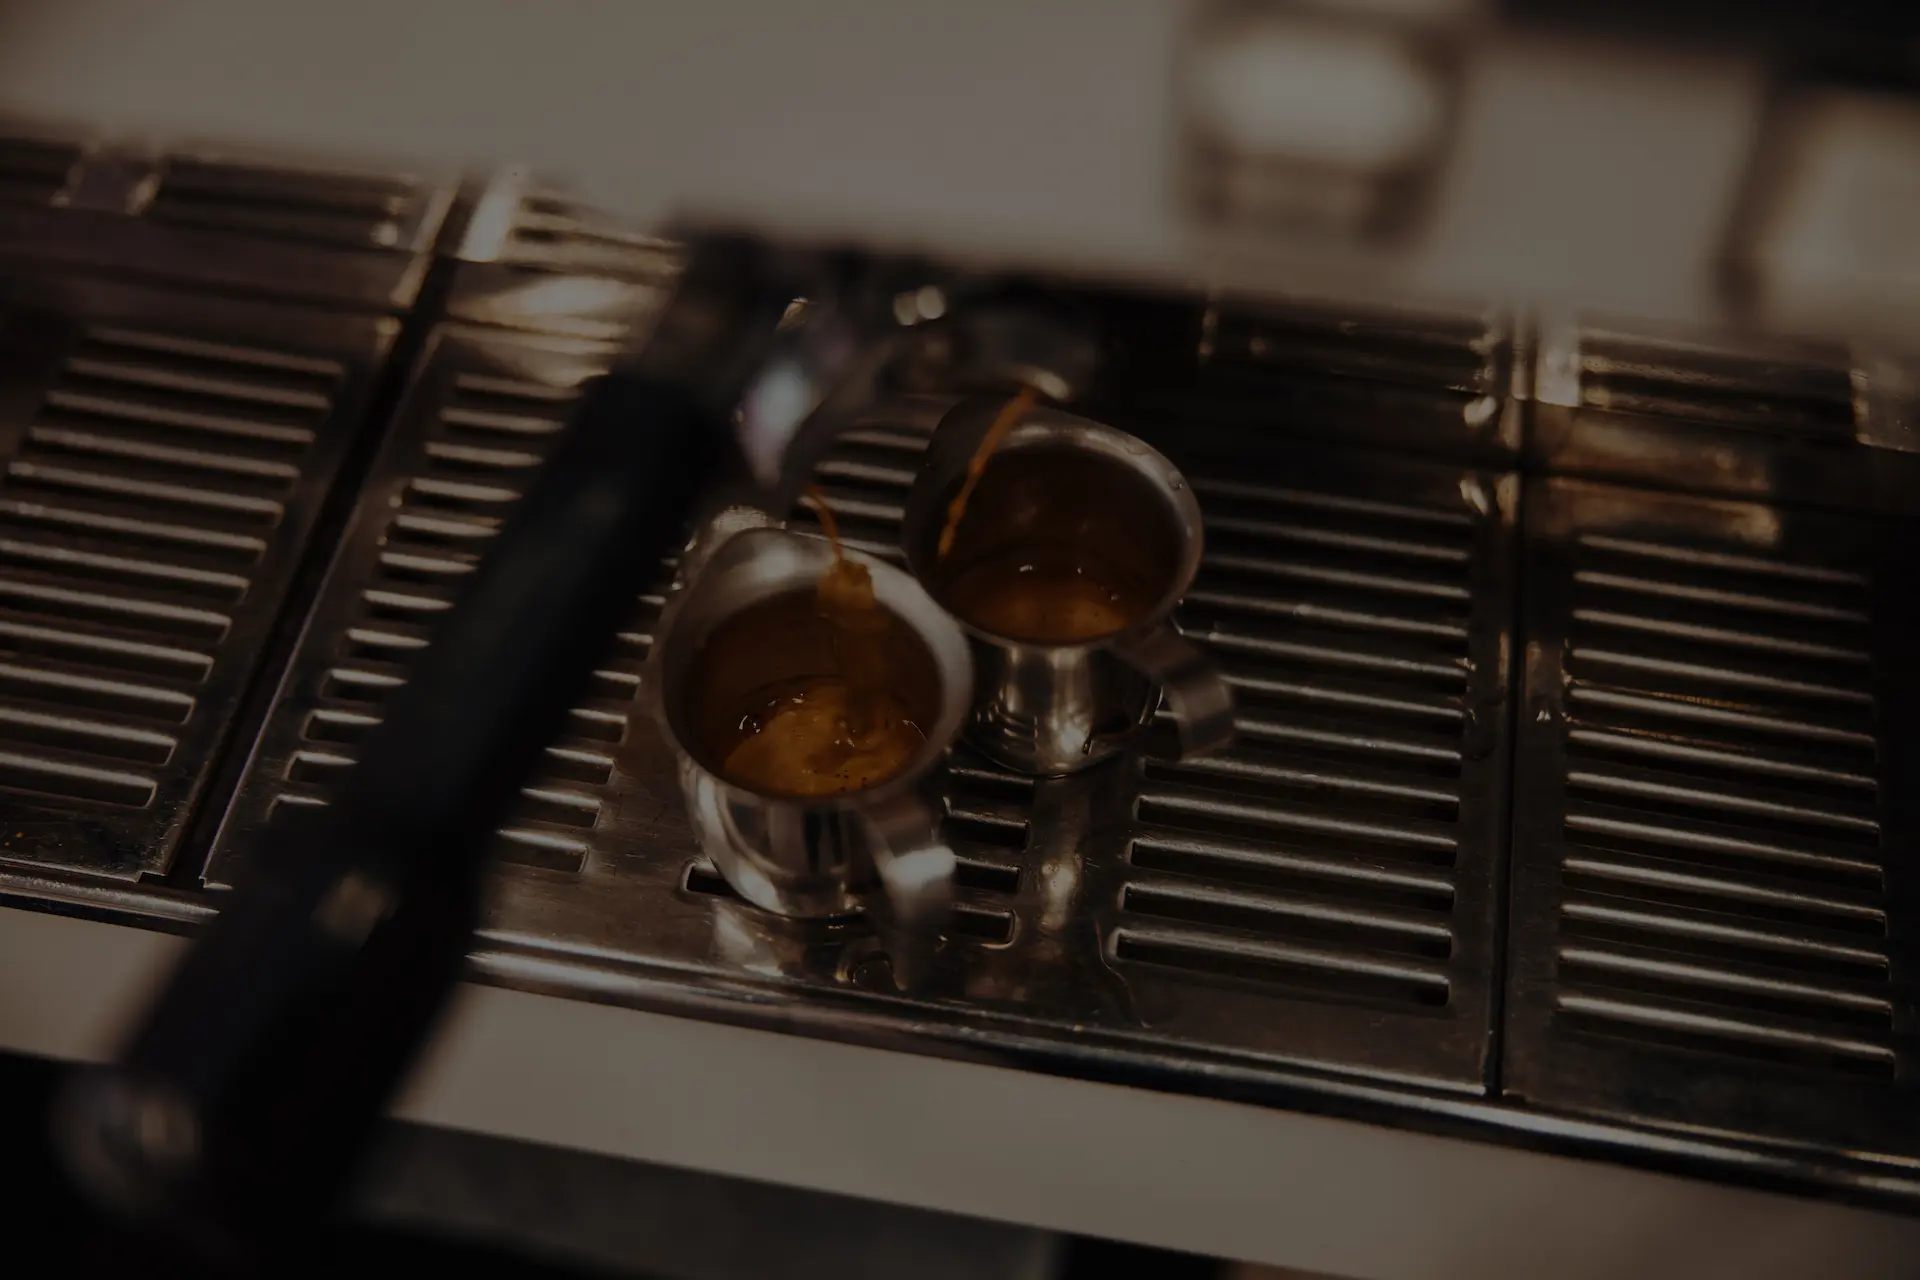 Siebtrgermaschine Espressoextraktion